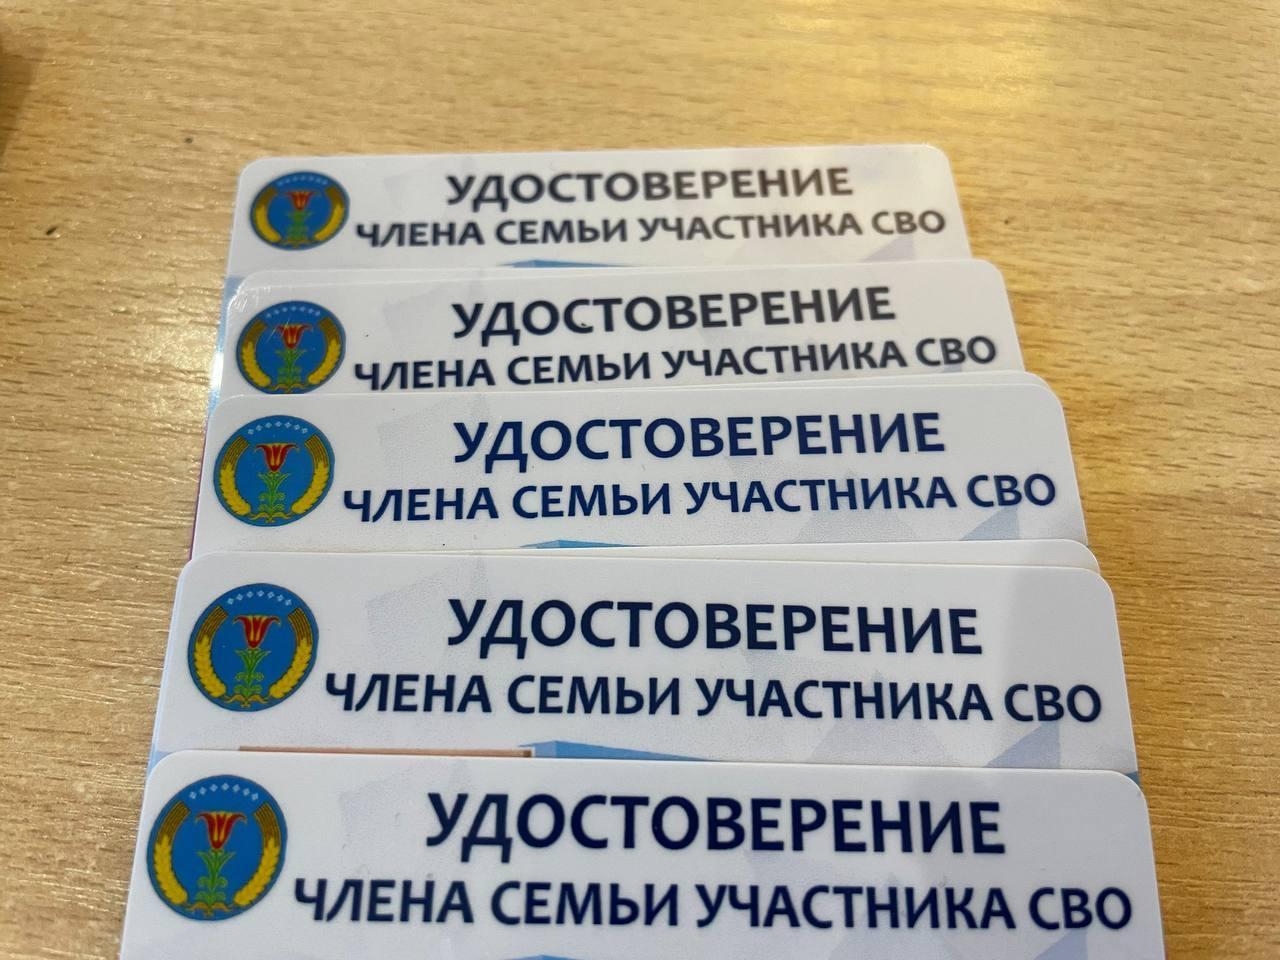 Удостоверения выдали семьям участников СВО в Амгинском районе Якутии